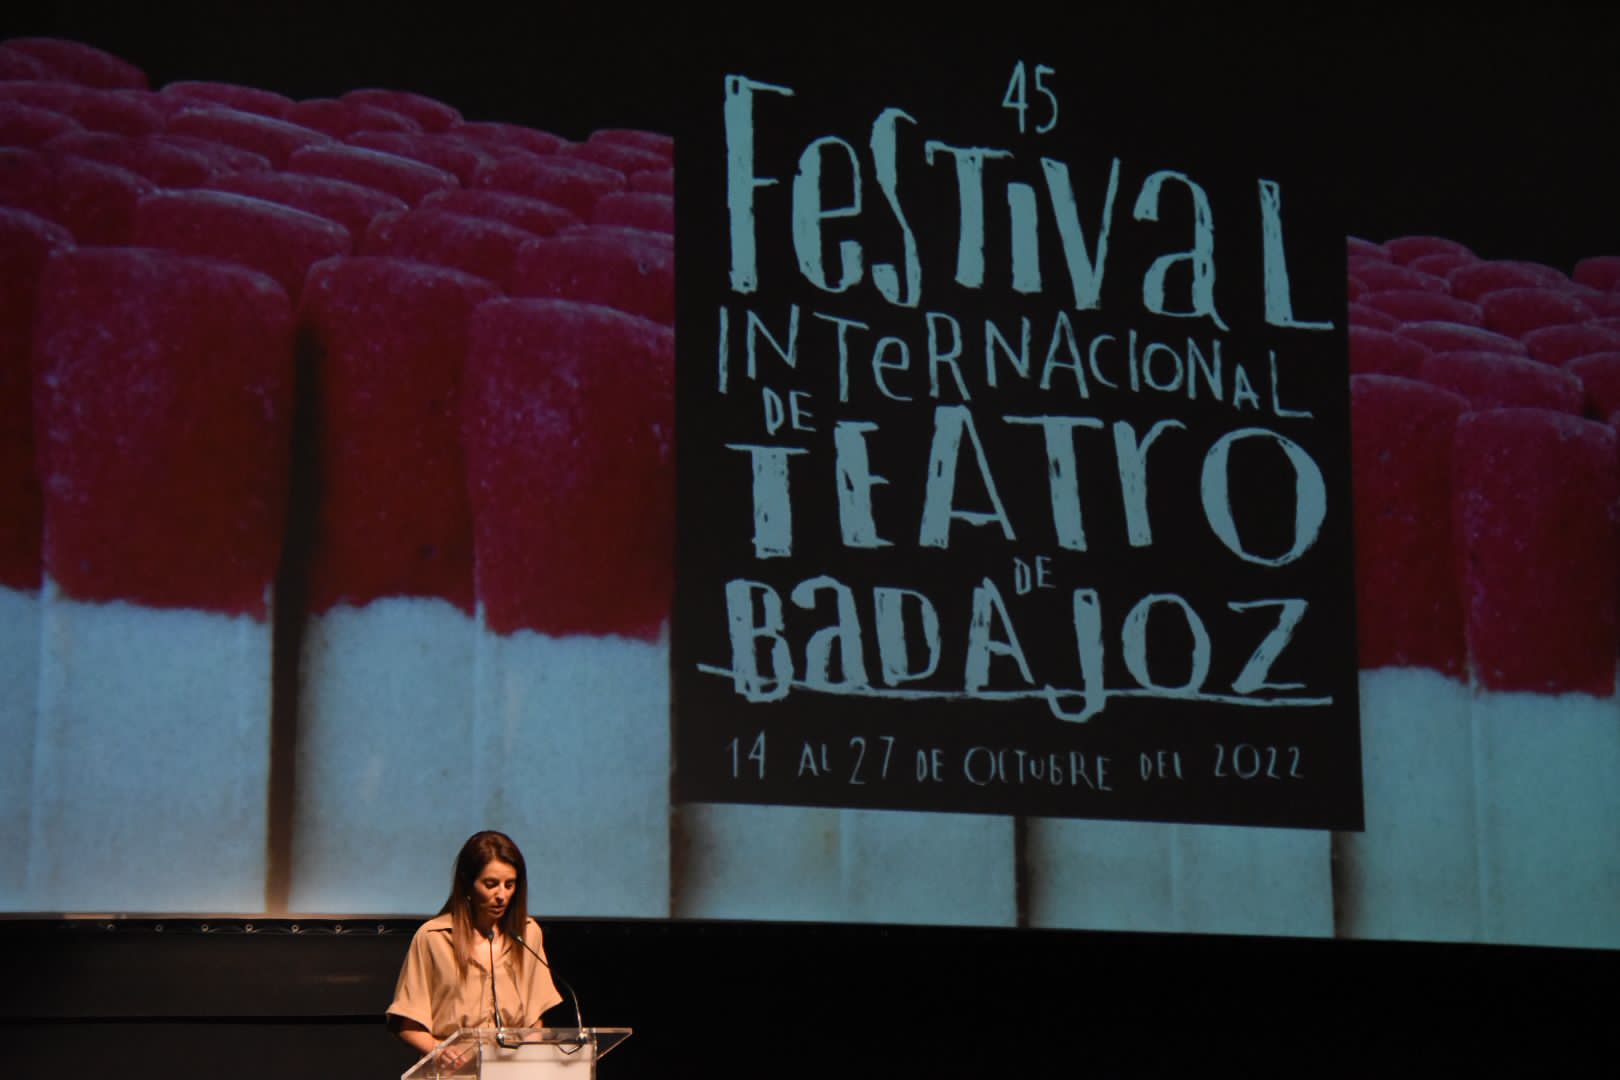 Foto de la presentación del Festival Internacional de Teatro de Badajoz 